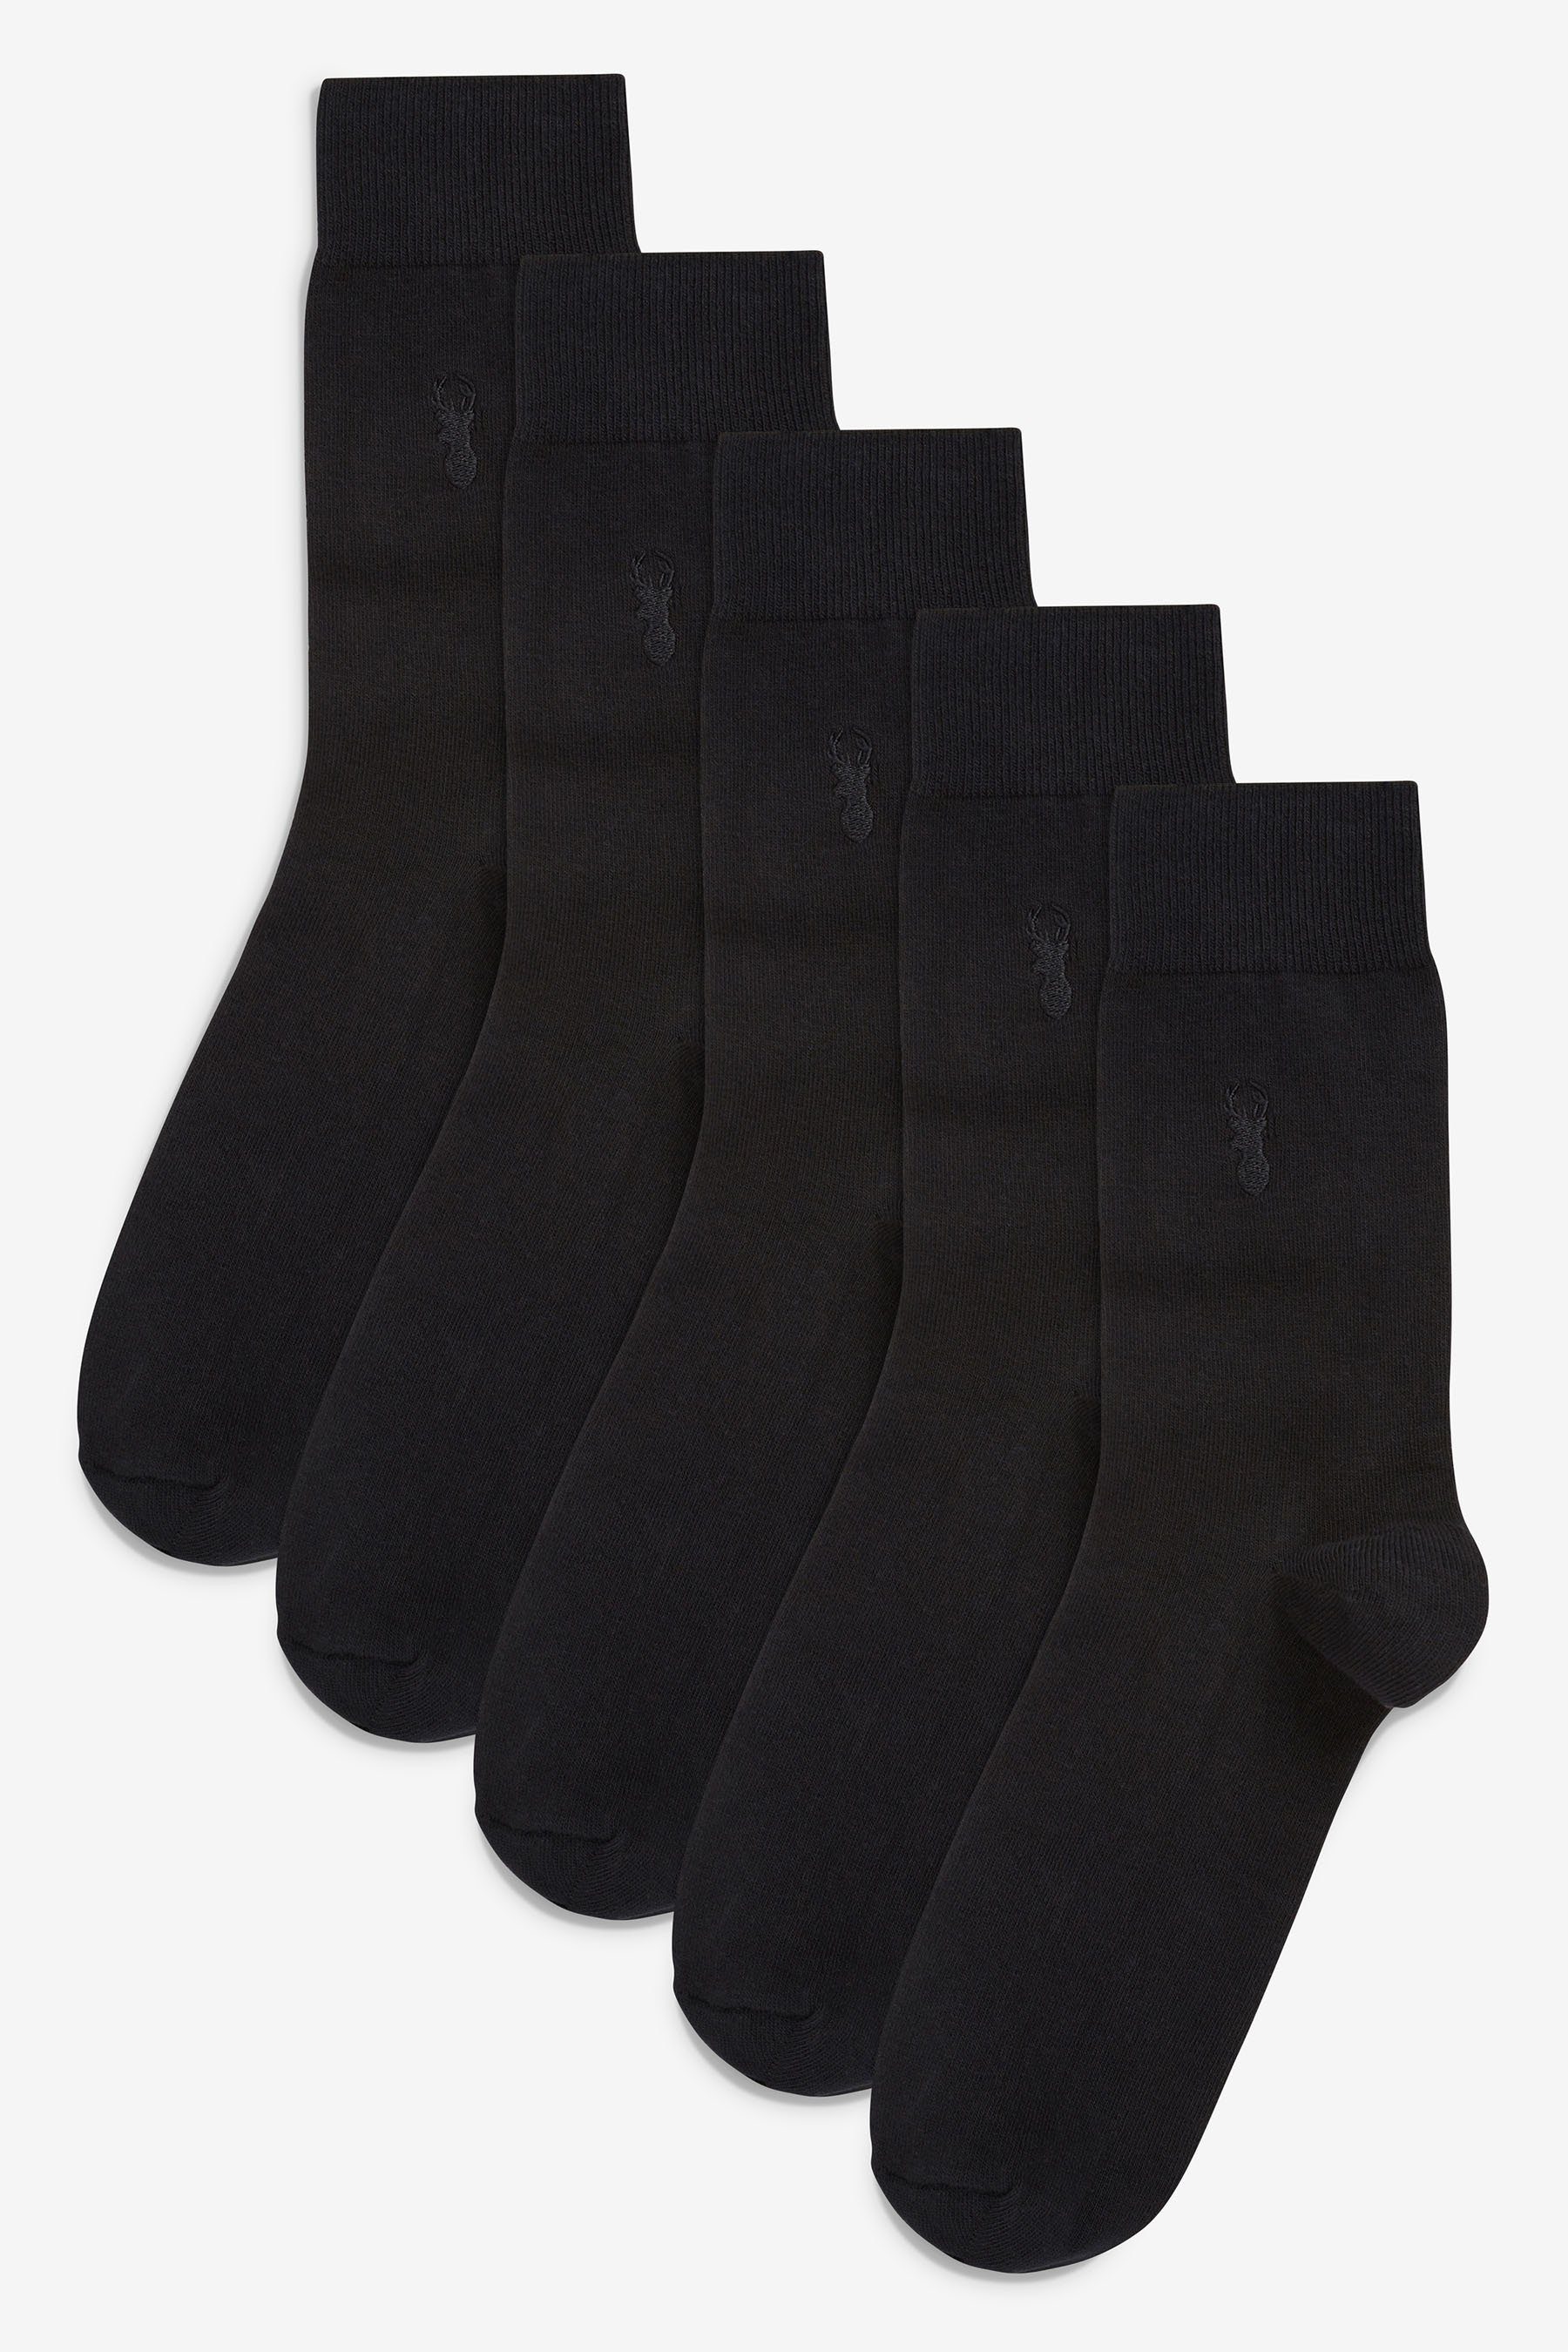 Socken Black Hirsch-Stickerei Kurzsocken (5-Paar) Next 5er-Pack Stag mit